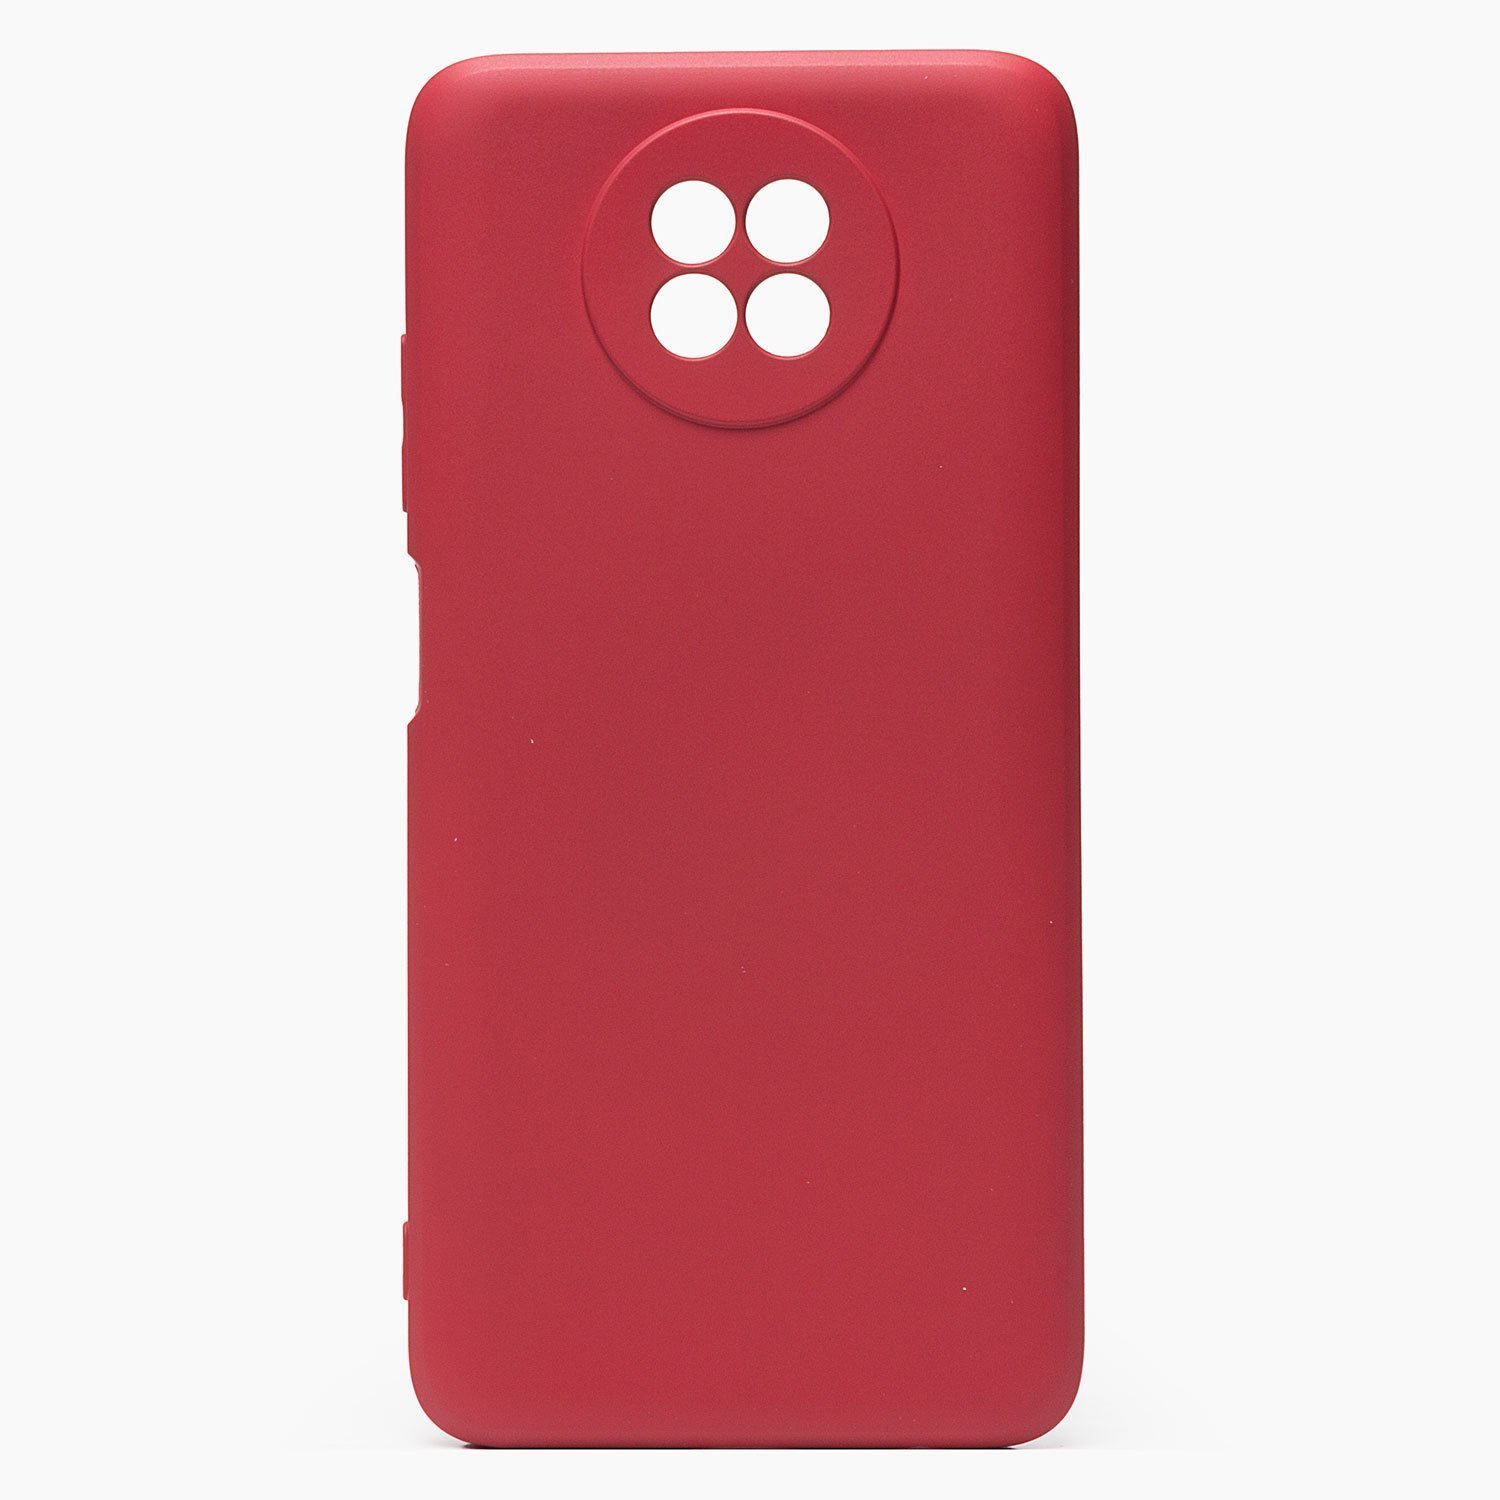 Чехол-накладка Activ Full Original Design для смартфона Xiaomi Redmi Note 9T, силикон, бордовый